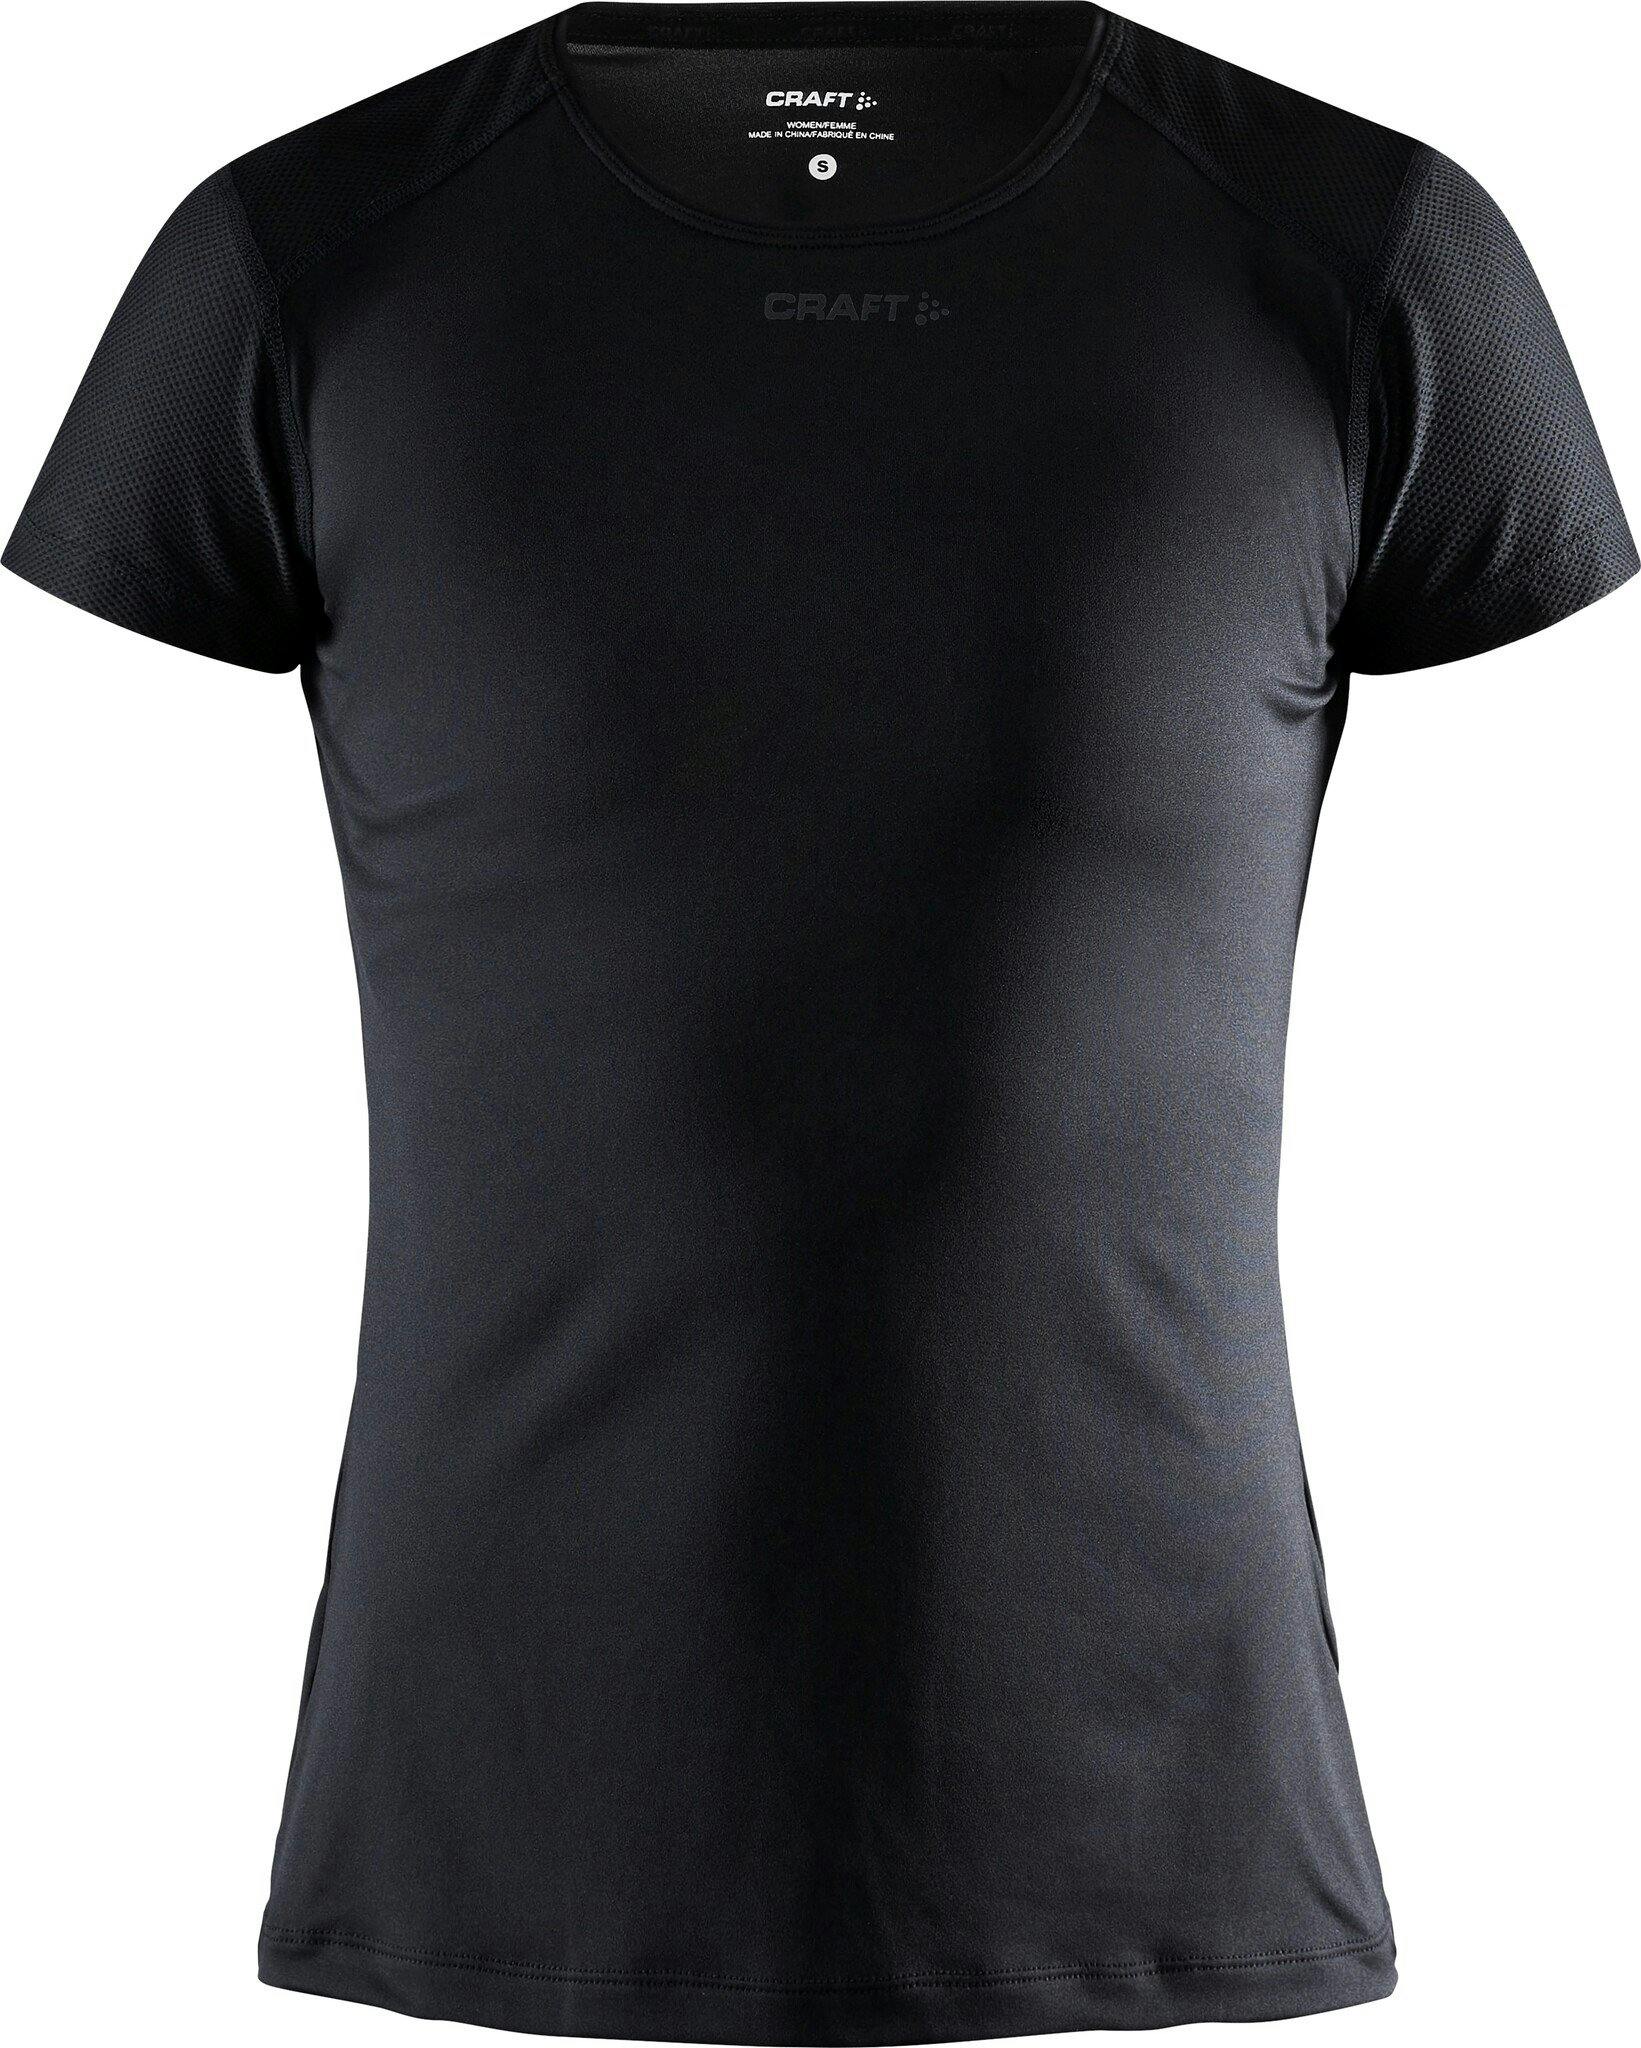 Image de produit pour T-shirt ajusté à manches courtes ADV Essence - Femme